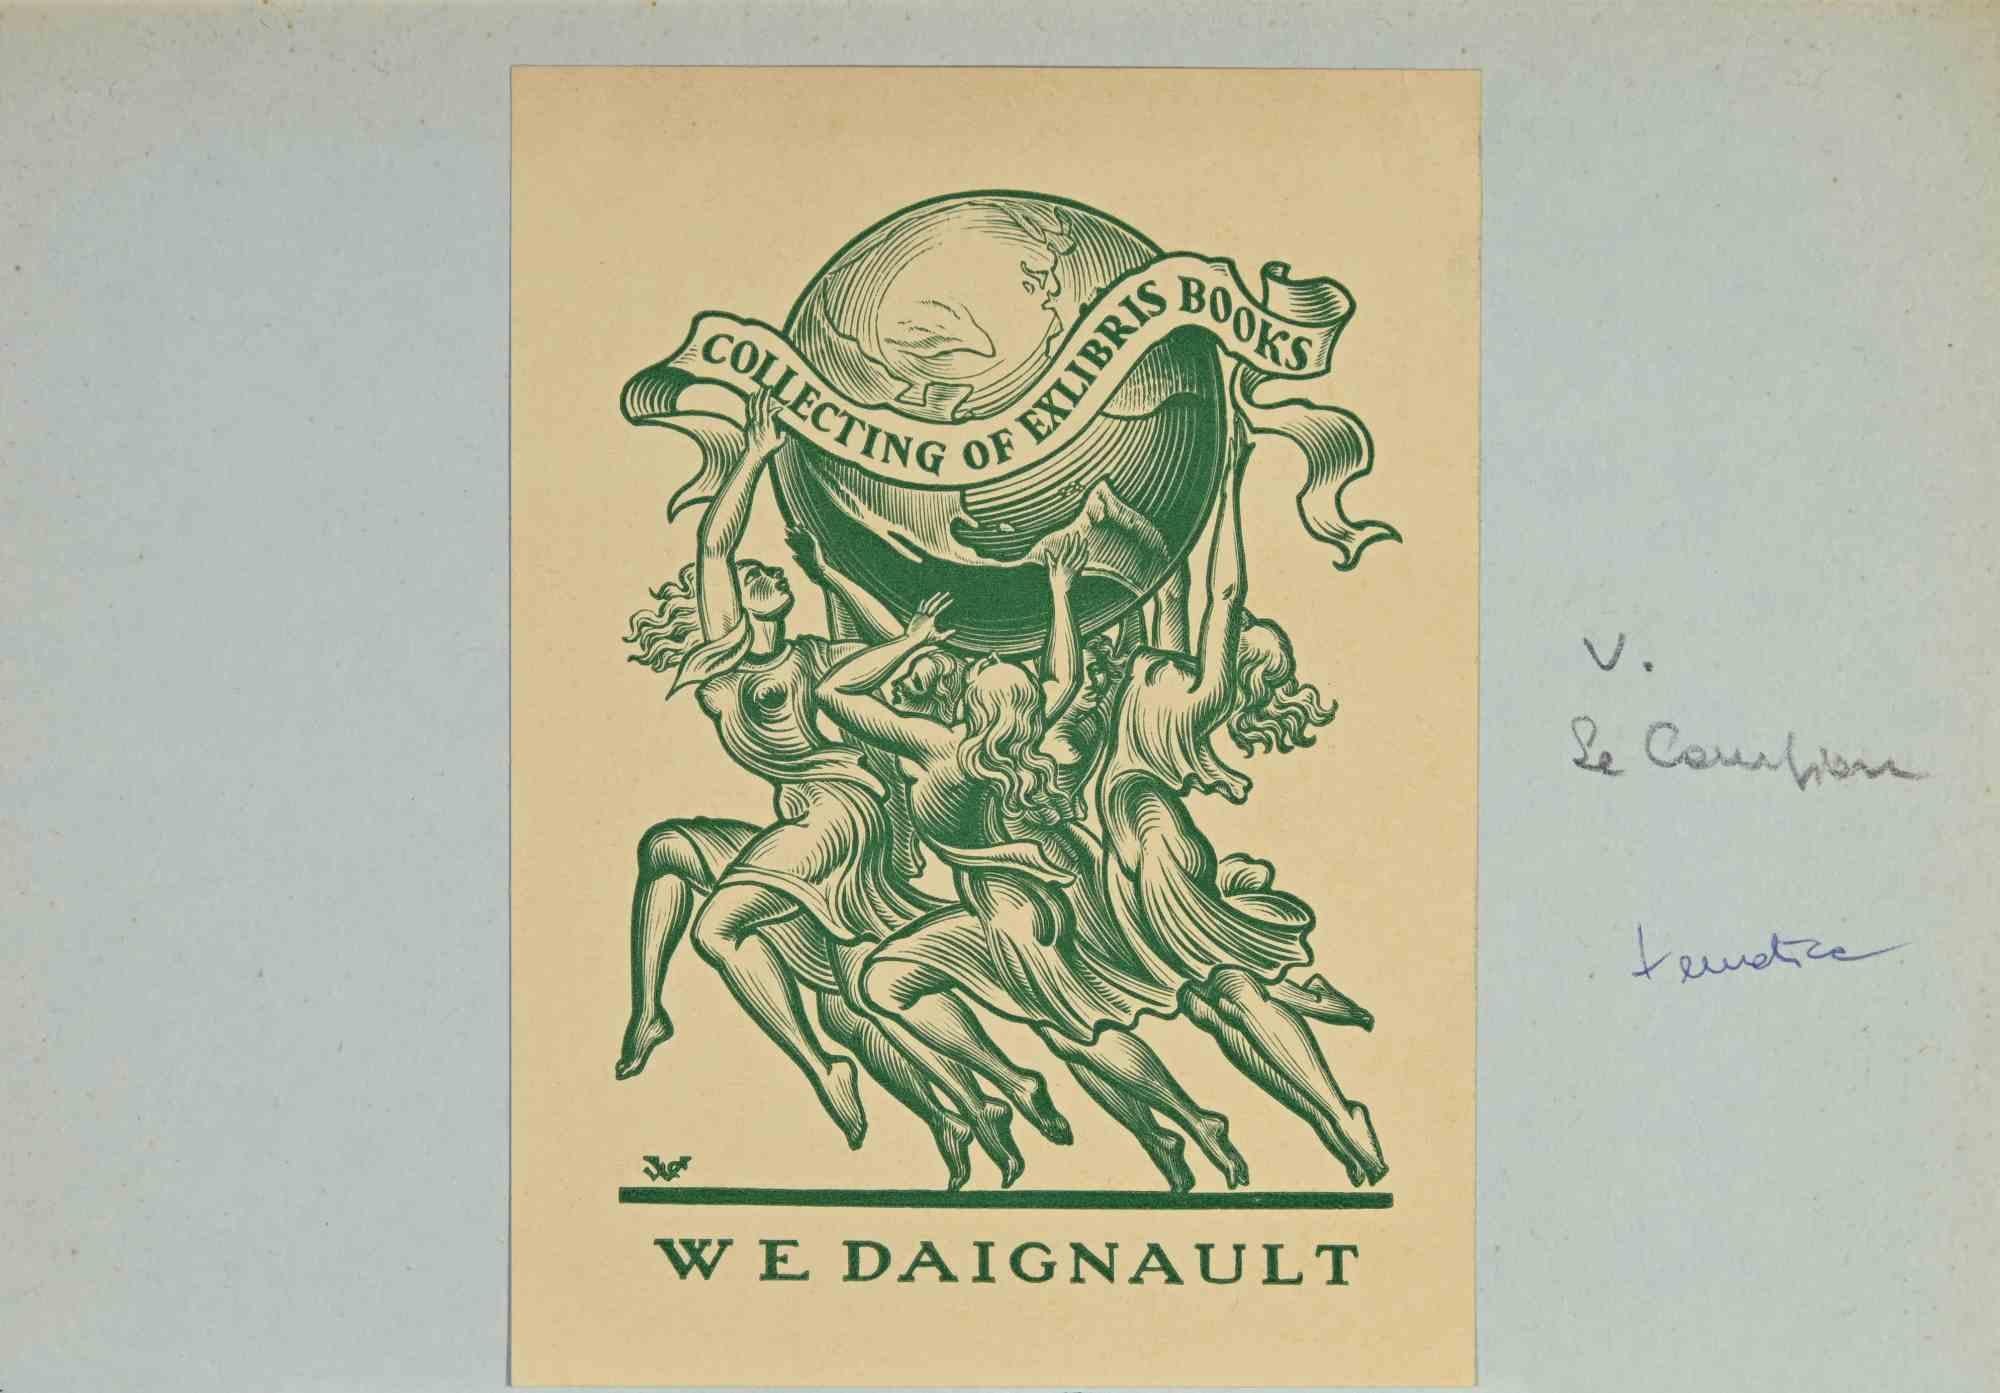 Ex-Libris - W.E. Daignault ist ein Kunstwerk des Künstlers Valentin Le Campion aus den 1930er Jahren.

Lithographie auf Papier.

Das Werk ist auf elfenbeinfarbenen Karton geklebt. Abmessungen insgesamt: 13 x 20 cm.

Gute Bedingungen.

Der Künstler